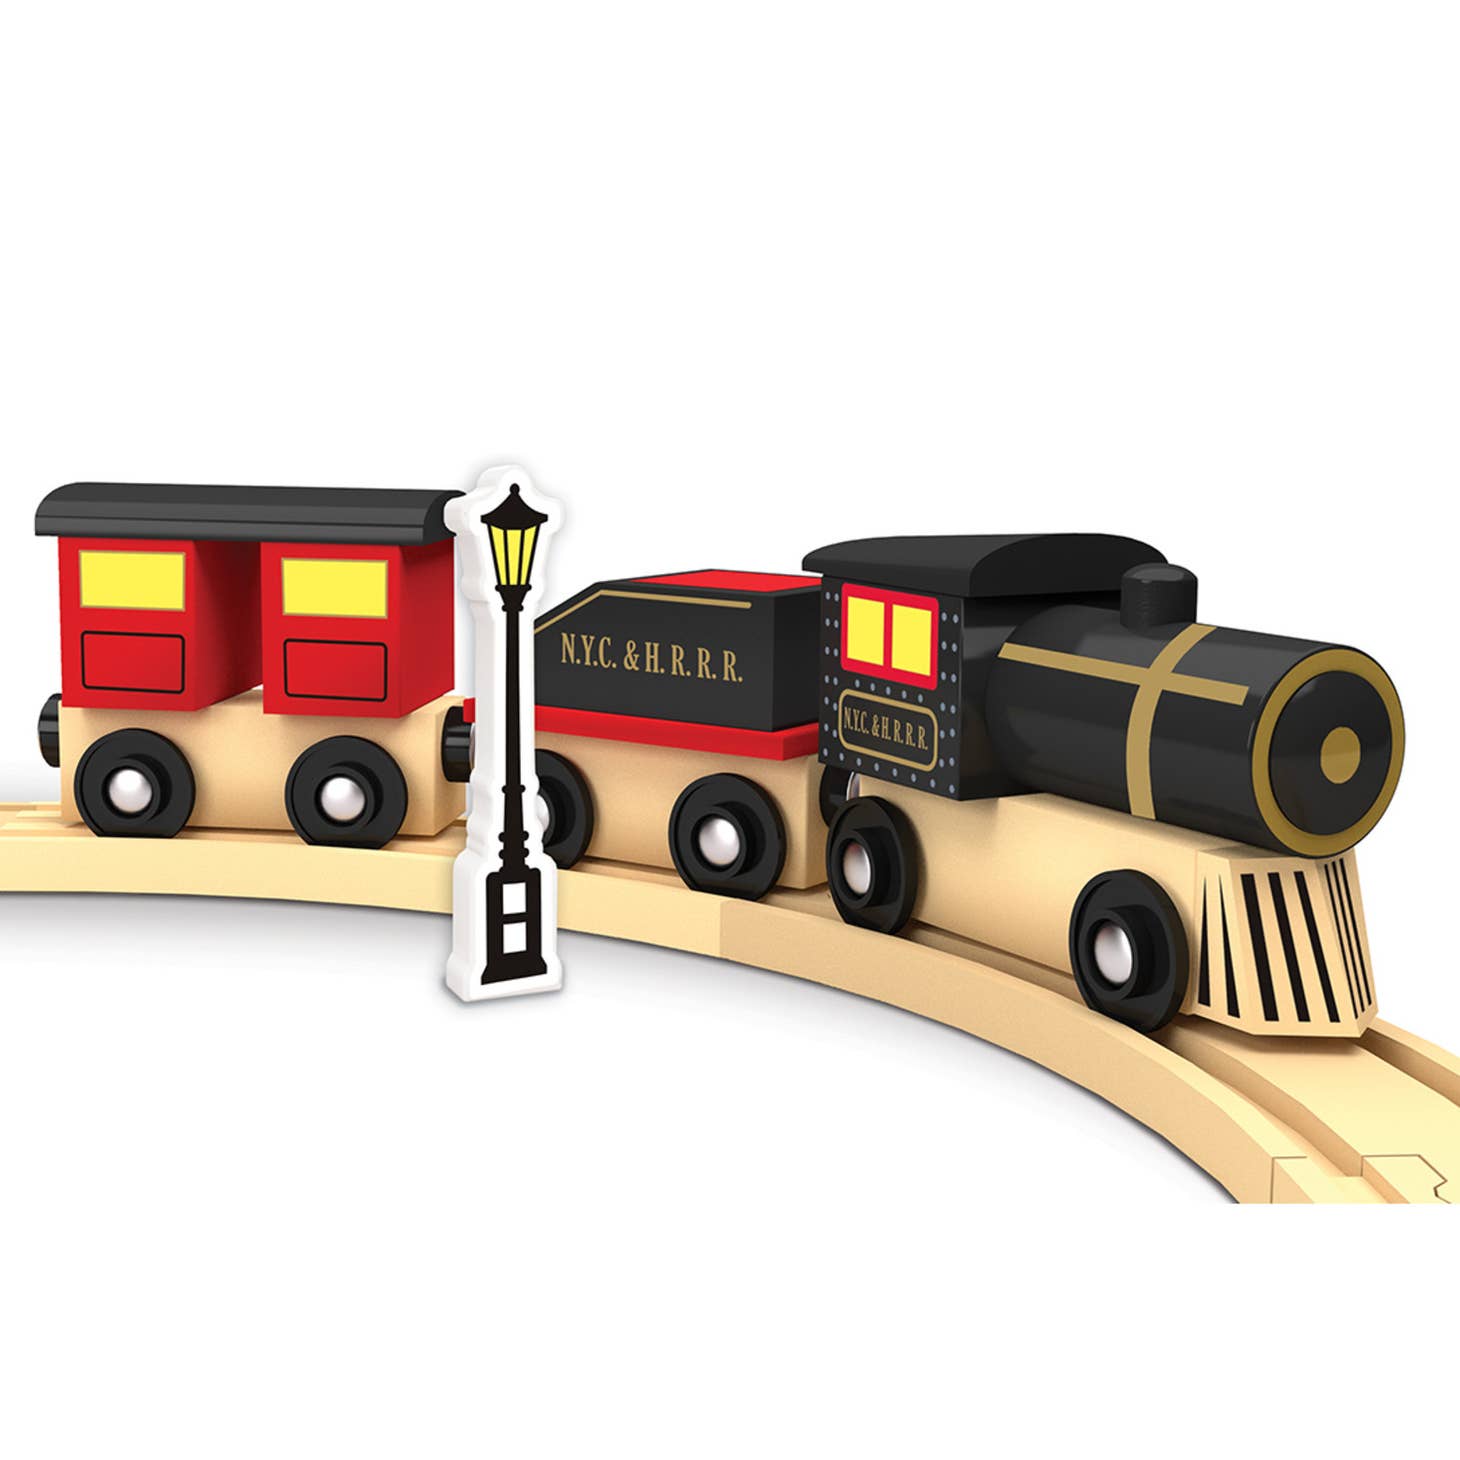 42016 Lionel - Original Steam Engine Toy Train Set